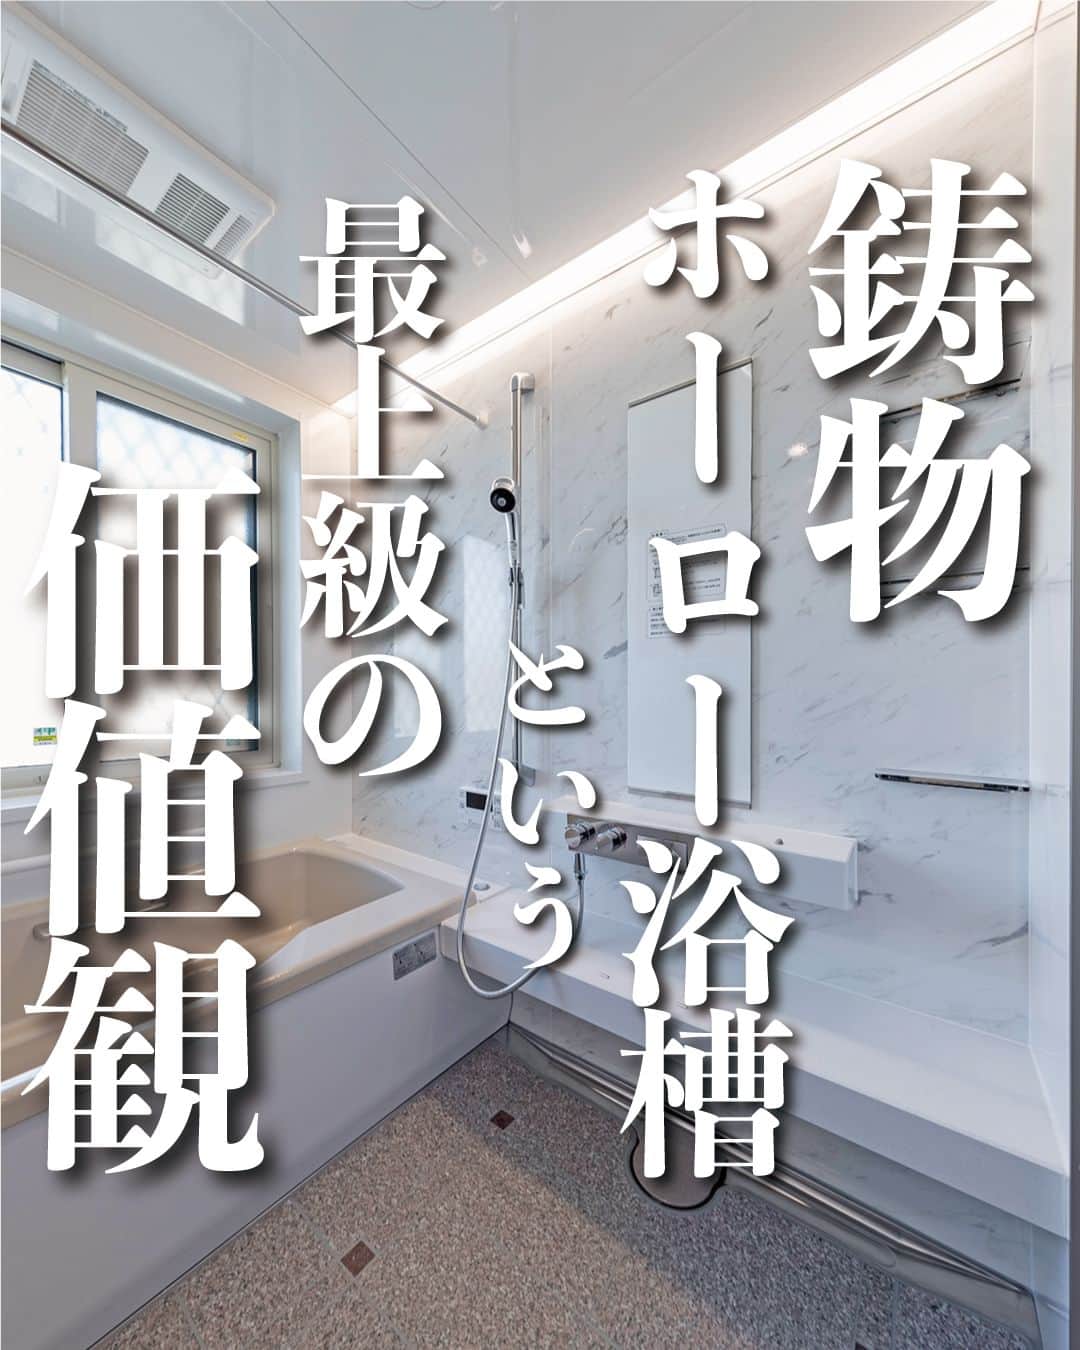 太陽住宅株式会社のインスタグラム：「太陽住宅の家 ▷▷▷ @taiyojutaku …………………………………………………………  本日は【最上級の価値観！ホーロー浴槽】をご紹介𓍯𓍯  こちらのお風呂は「タカラスタンダードの鋳物ホーロー浴槽」を採用しました。  ホーローとは、金属とガラス質が結合した夢の素材です✨ガラスは、水・熱・ニオイに強く、さらに見た目も美しい素材ですが割れやすいのがデメリット 。  そのデメリットを克服した”割れにくいガラス”が『ホーロー』なんです♪  そんなホーロー素材できた浴槽、贅沢以外の何ものでもありません♡  ⳹オープンハウス開催中！⳼ ◎豊橋市西高師町　 　コンセプトモデルハウス『希望の家』 　ぜひお気軽にお問合せください♪ ………………………………………………………… 残すもの・・・。 記録と、記憶と思い出と。 丈夫で長持ち、太陽住宅の家。 ………………………………………………………… ⁡ HPでもたくさんの #施工事例 を掲載しております😌✨  太陽住宅の家 詳しくはコチラから ▷▷▷ @taiyojutaku  気になることがあれば、いつでもコメント・DM📩お待ちしております🙋  ──────────────────────── 太陽住宅株式会社 愛知県豊橋市三本木町字元三本木18-5 0120-946-265 ────────────────────────  #ホーロー #ホーロー浴槽 #鋳物 #タカラスタンダードバスルーム #プレデンシア #エマウォール #浴室 #浴室設計 #浴室デザイン #太陽住宅 #豊川土地 #豊橋土地 #豊橋注文住宅 #豊川注文住宅 #工務店がつくる家 #注文住宅のかっこいい工務店 #豊橋家づくり #豊川家づくり #マイホーム計画 #土地探しからの注文住宅 #土地探しから #建売に見えない建売 #自由設計 #子育てママ #house #instahome #太陽の家 #暮らしを楽しむ」